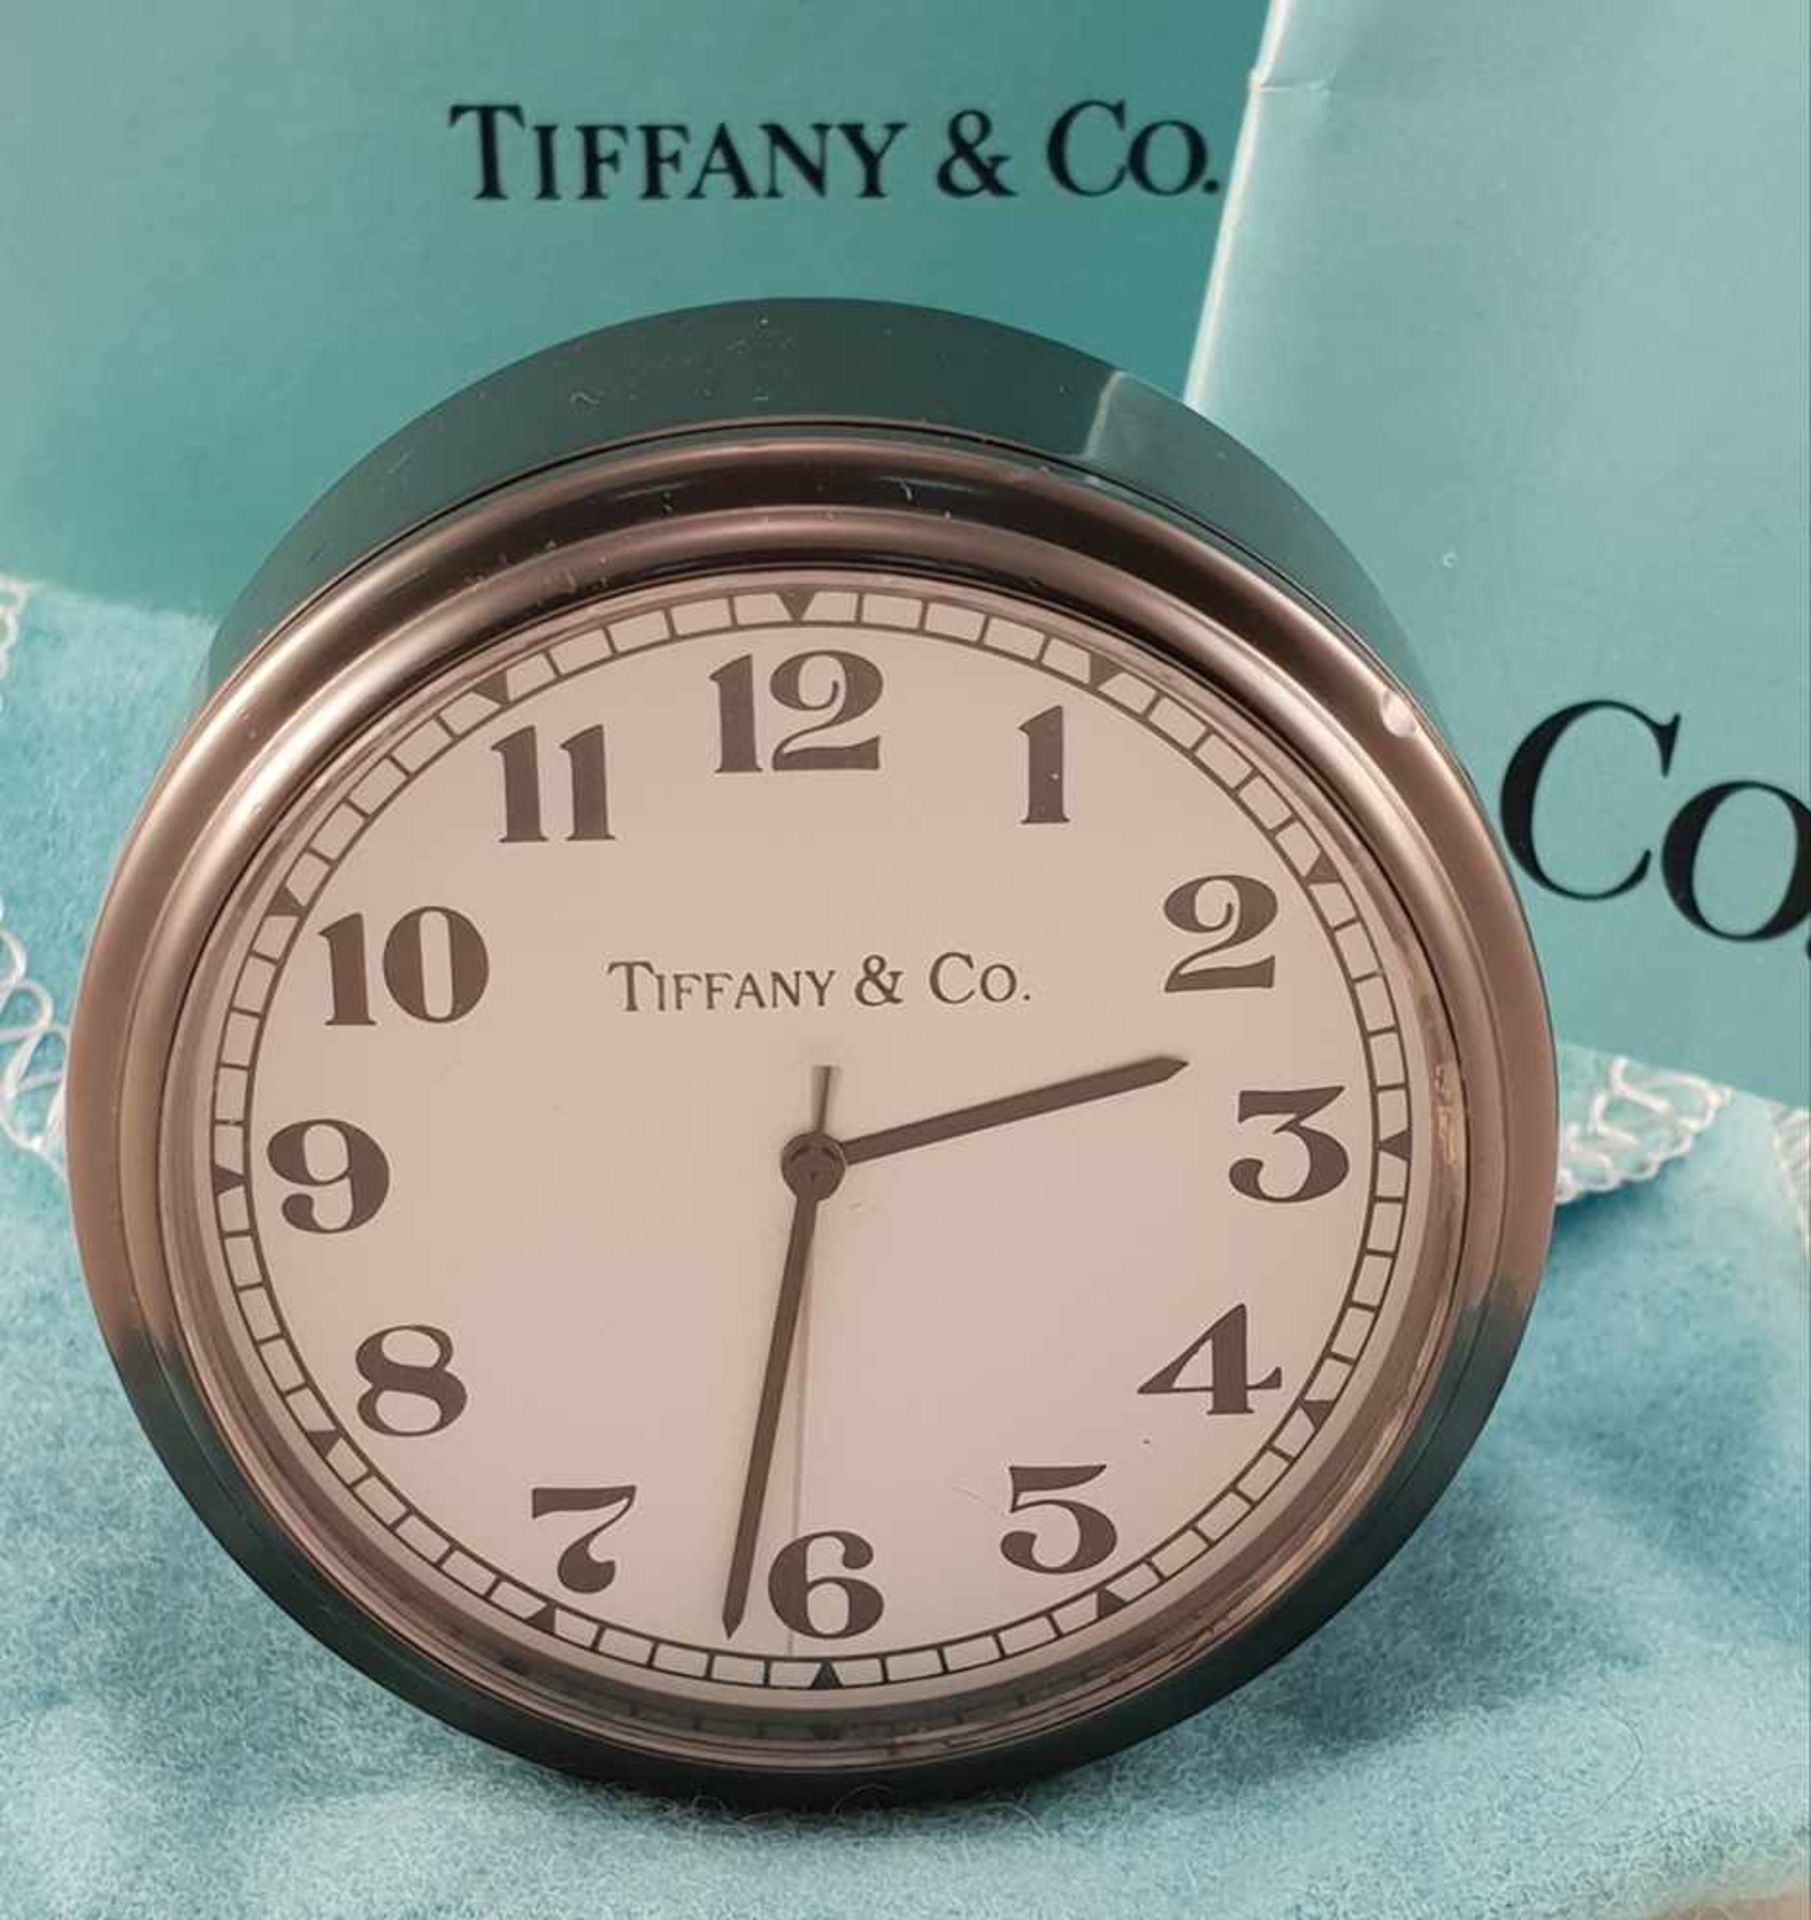 Tiffany & Co. Wecker, Gehäuse Metall geschwärzt, Zeiger, zentrale Sekunde und arabische Zahlen der - Image 2 of 2